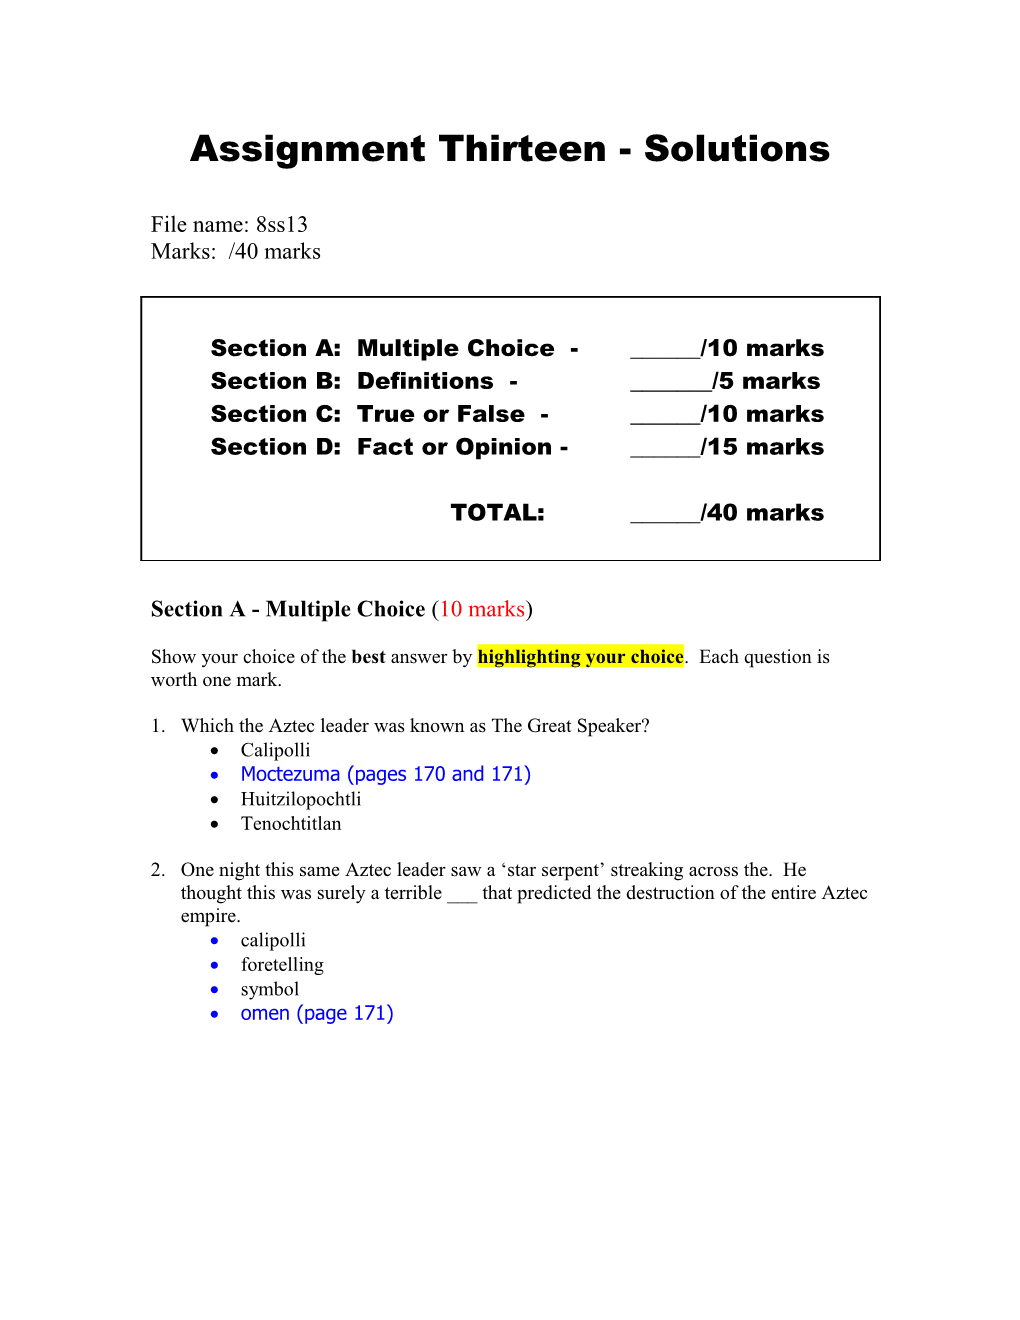 Assignment Thirteen - Solutions